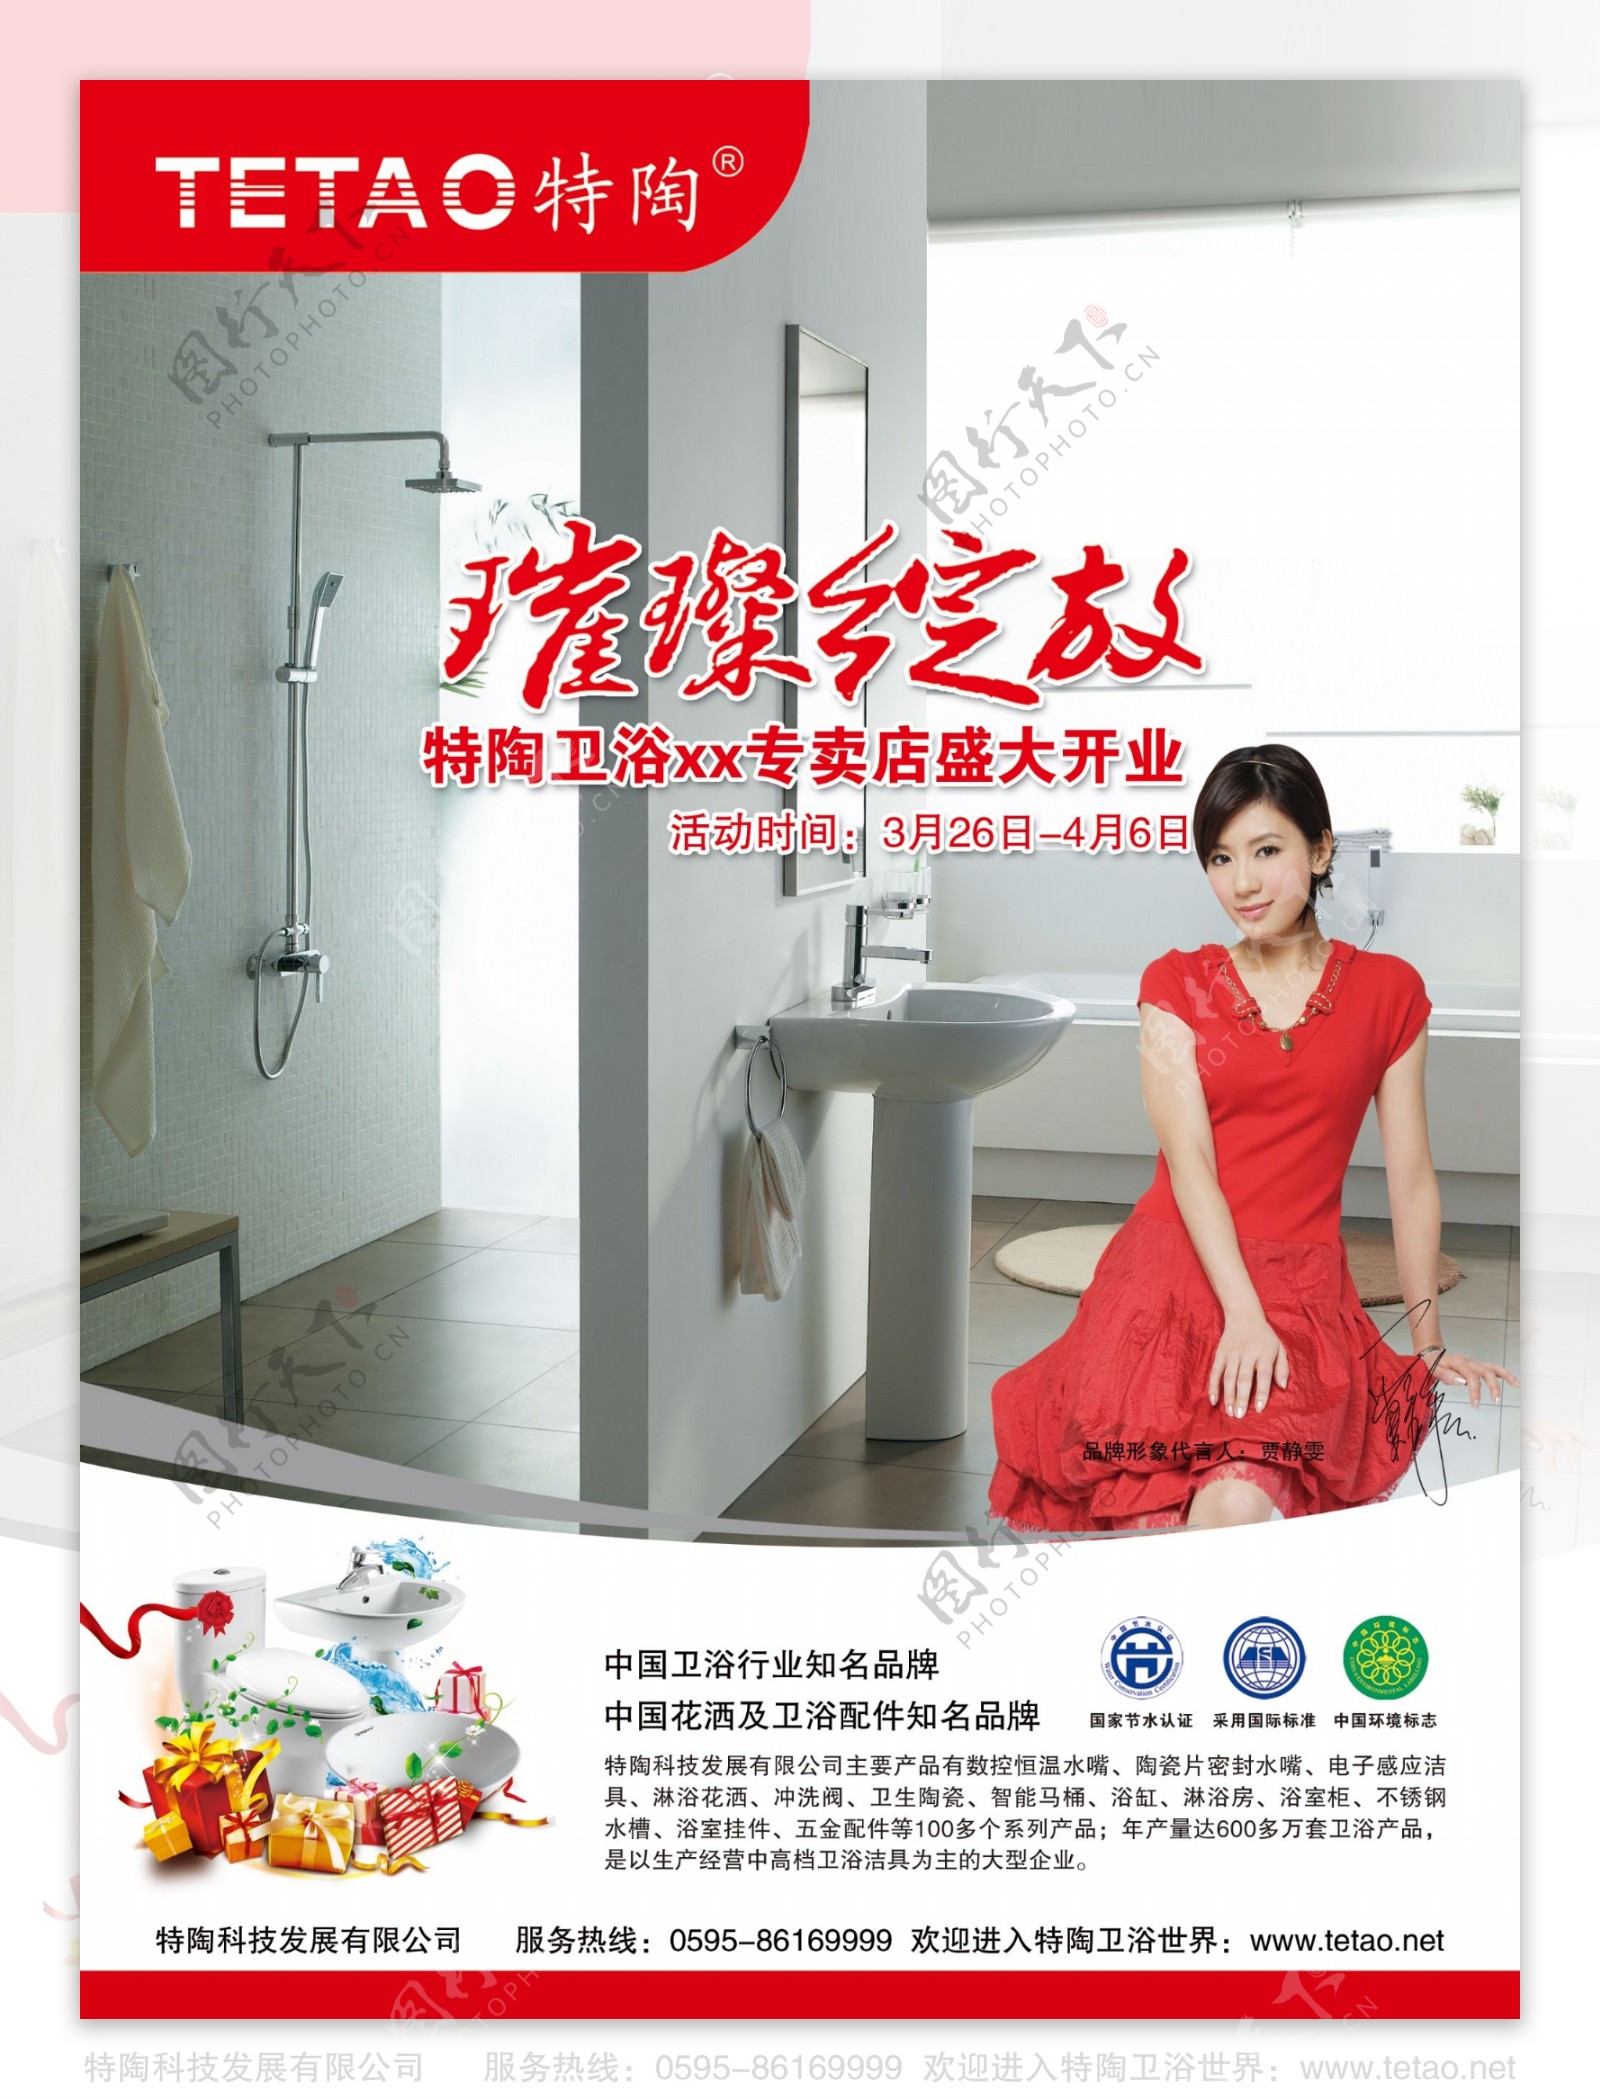 中国卫浴开业品牌海报广告PSD素材